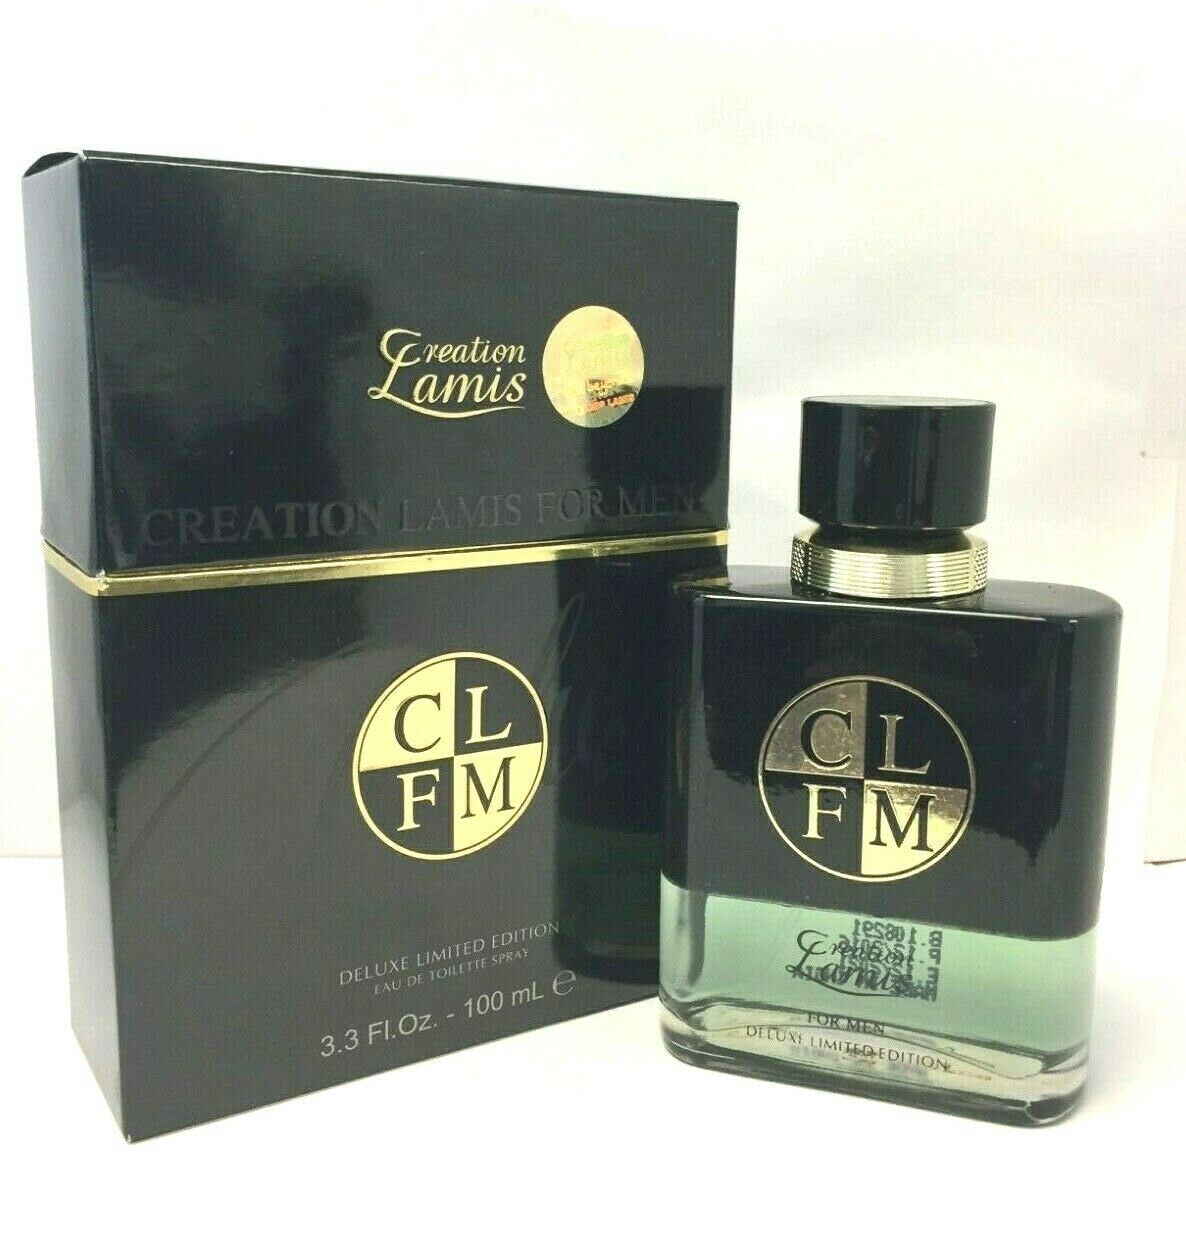 Creation Lamis CLFM by Creation Lamis Men 3.4 oz Eau de Toilette Spray | FragranceBaba.com